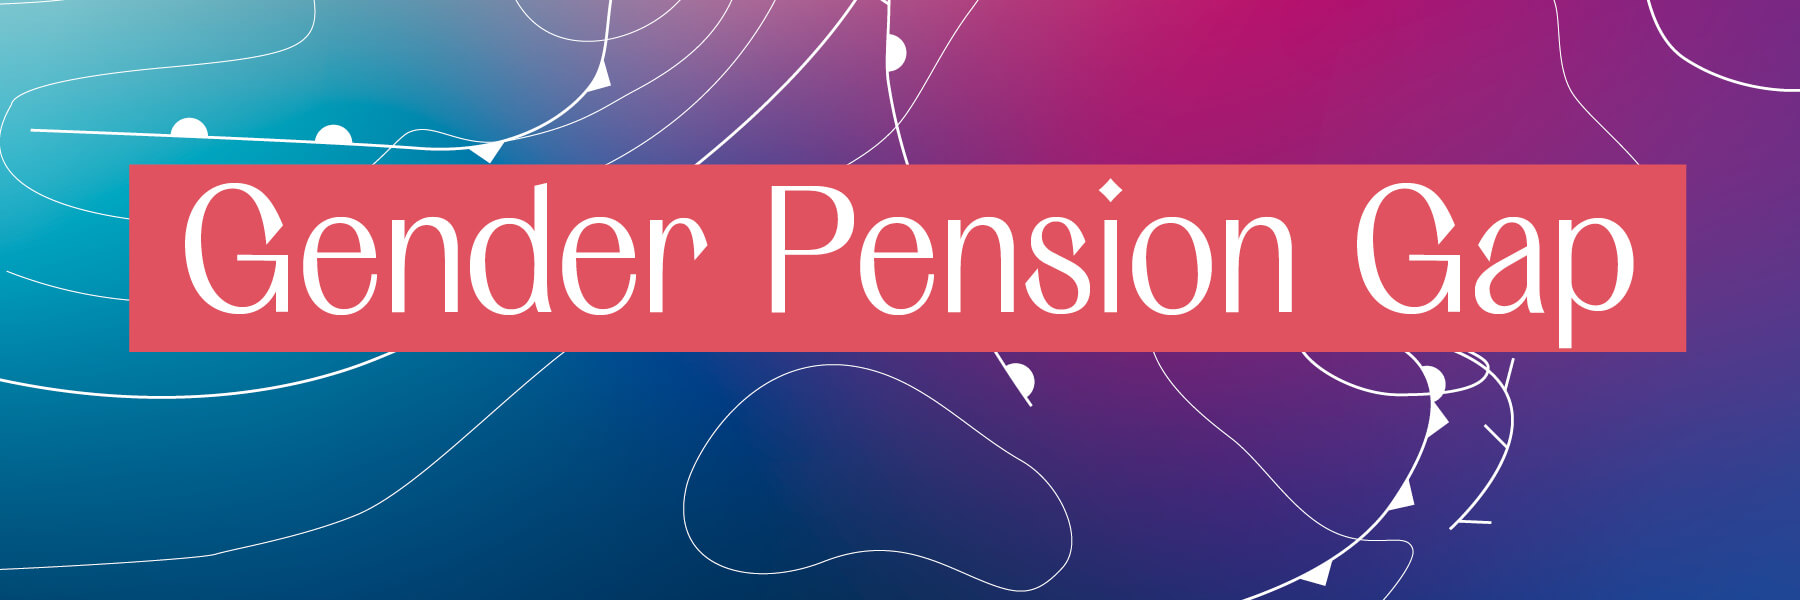 FES Gender Glossar - Gender Pension Gap